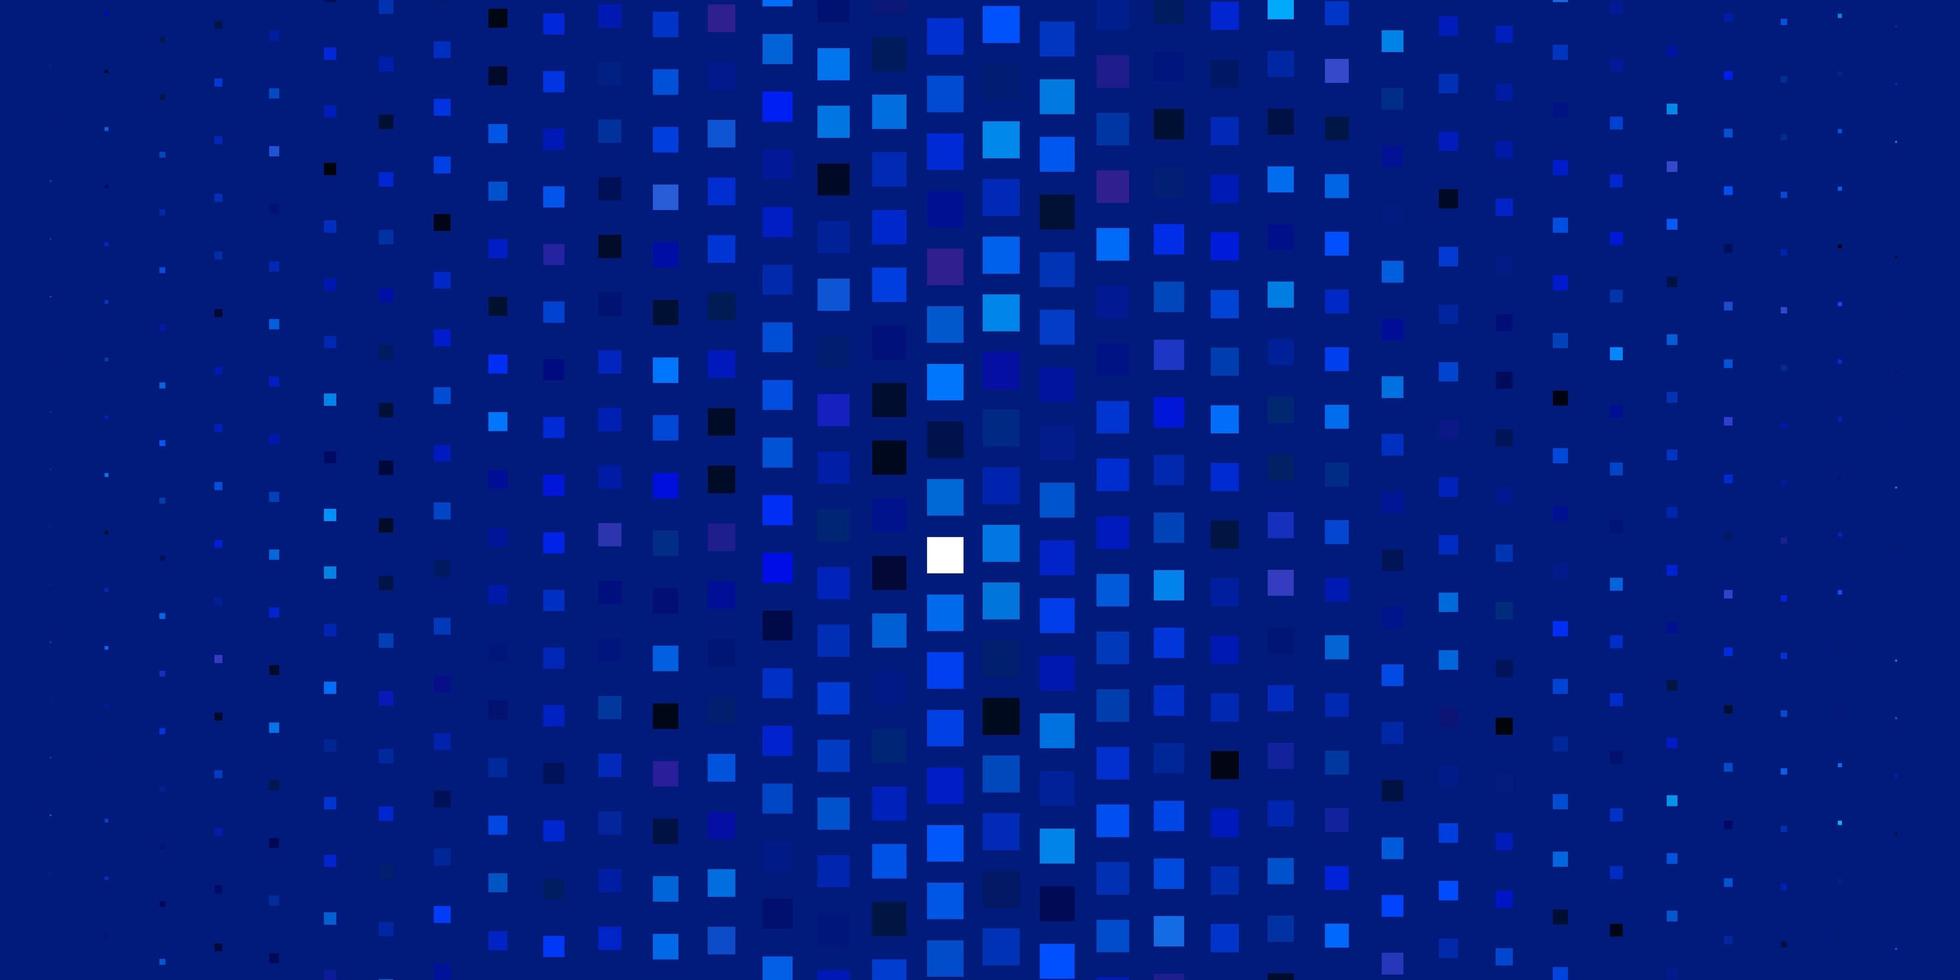 lichtroze blauwe vectorachtergrond met rechthoeken kleurrijke illustratie met gradiëntrechthoeken en vierkantenpatroon voor websites bestemmingspagina's vector